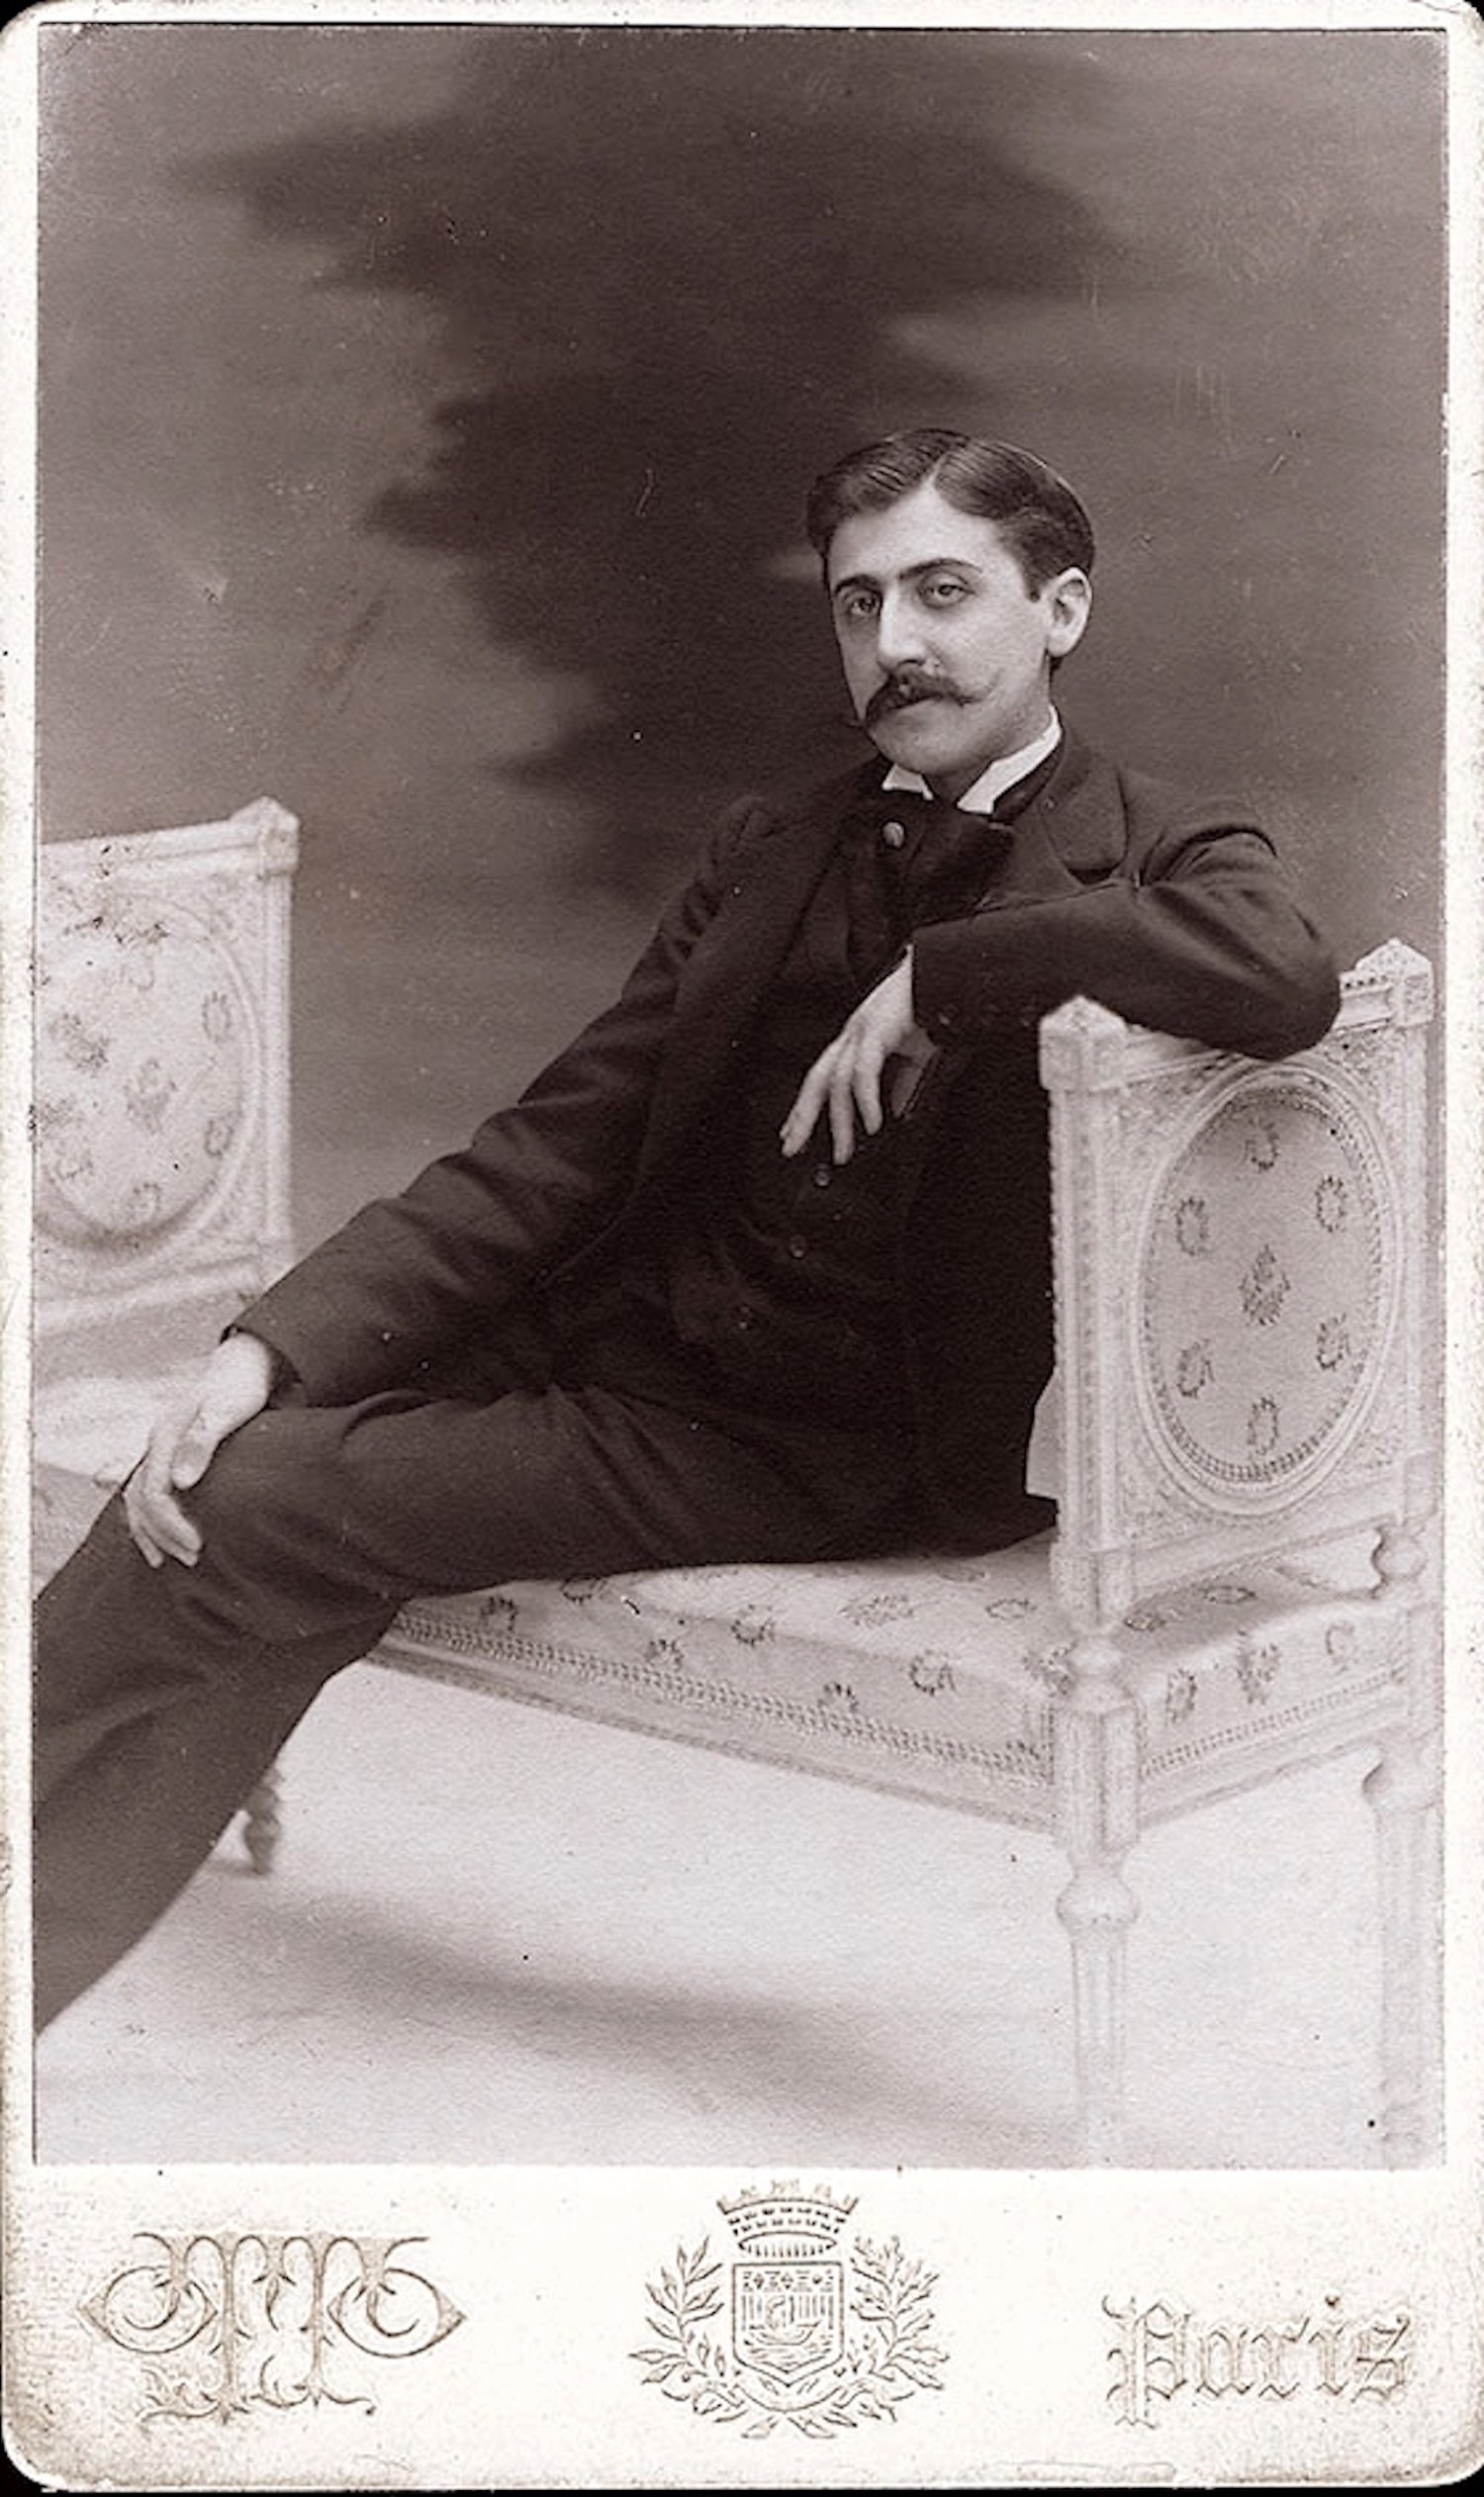 Ocho cuentos inéditos muestran el Proust más abiertamente gay